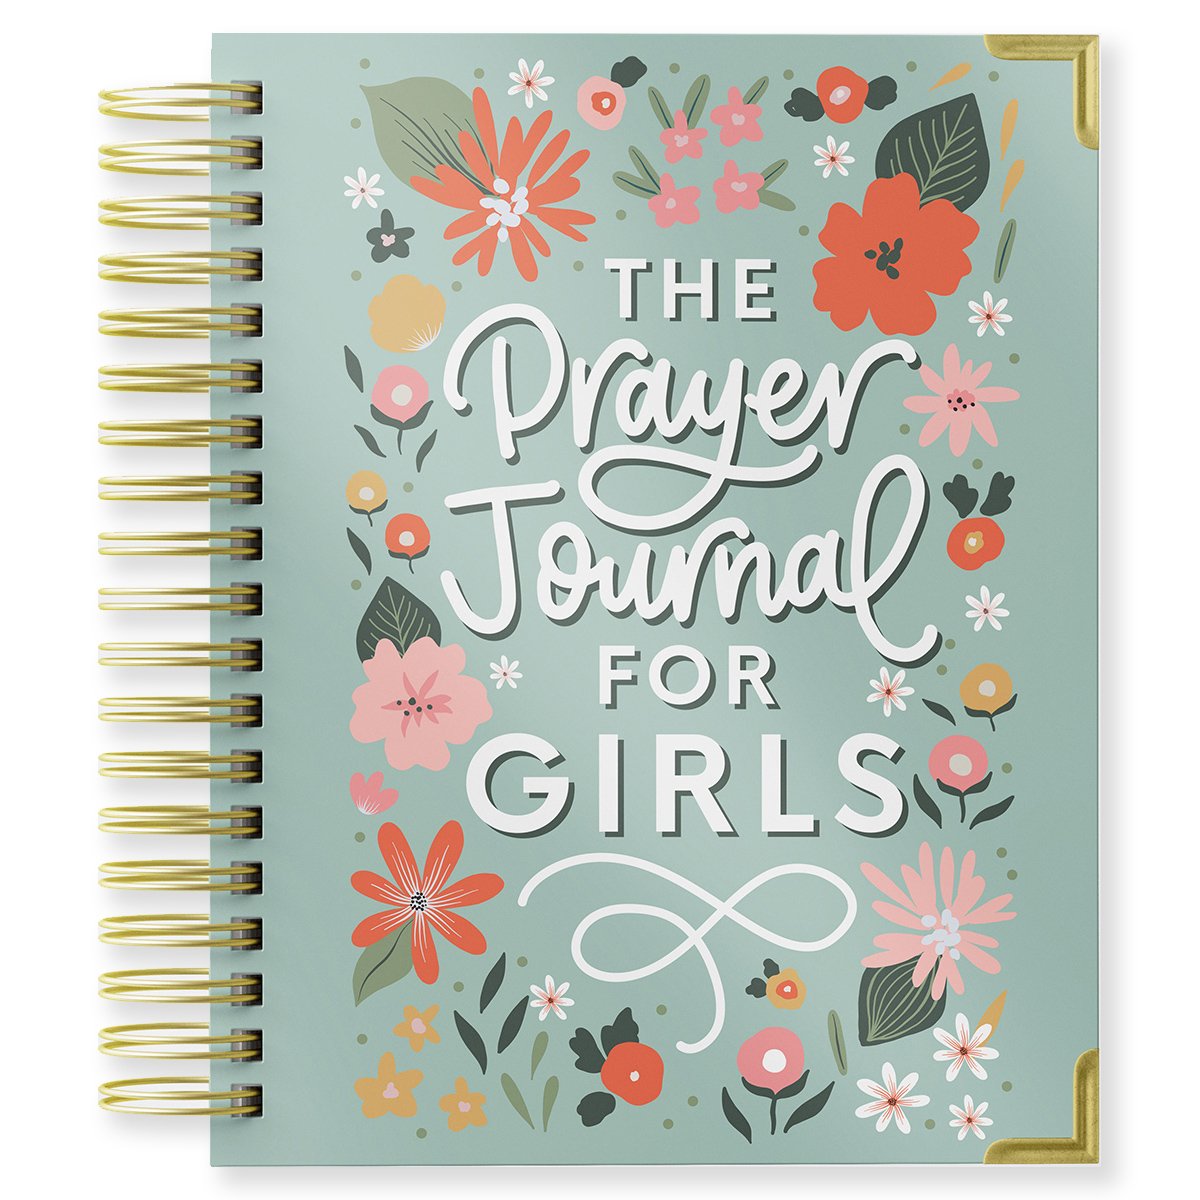 Prayer Journal for Girls